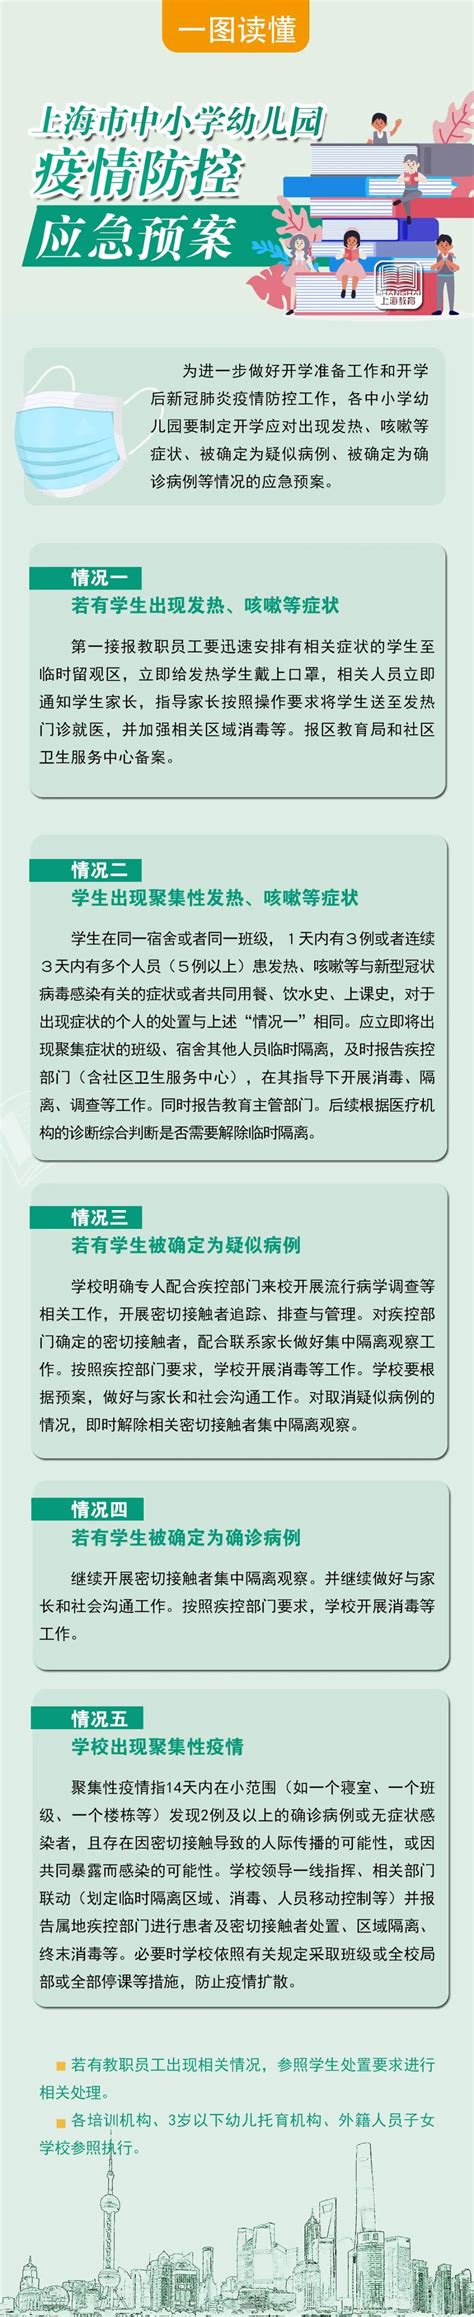 图解 | 上海学校疫情防控应急预案_央广网